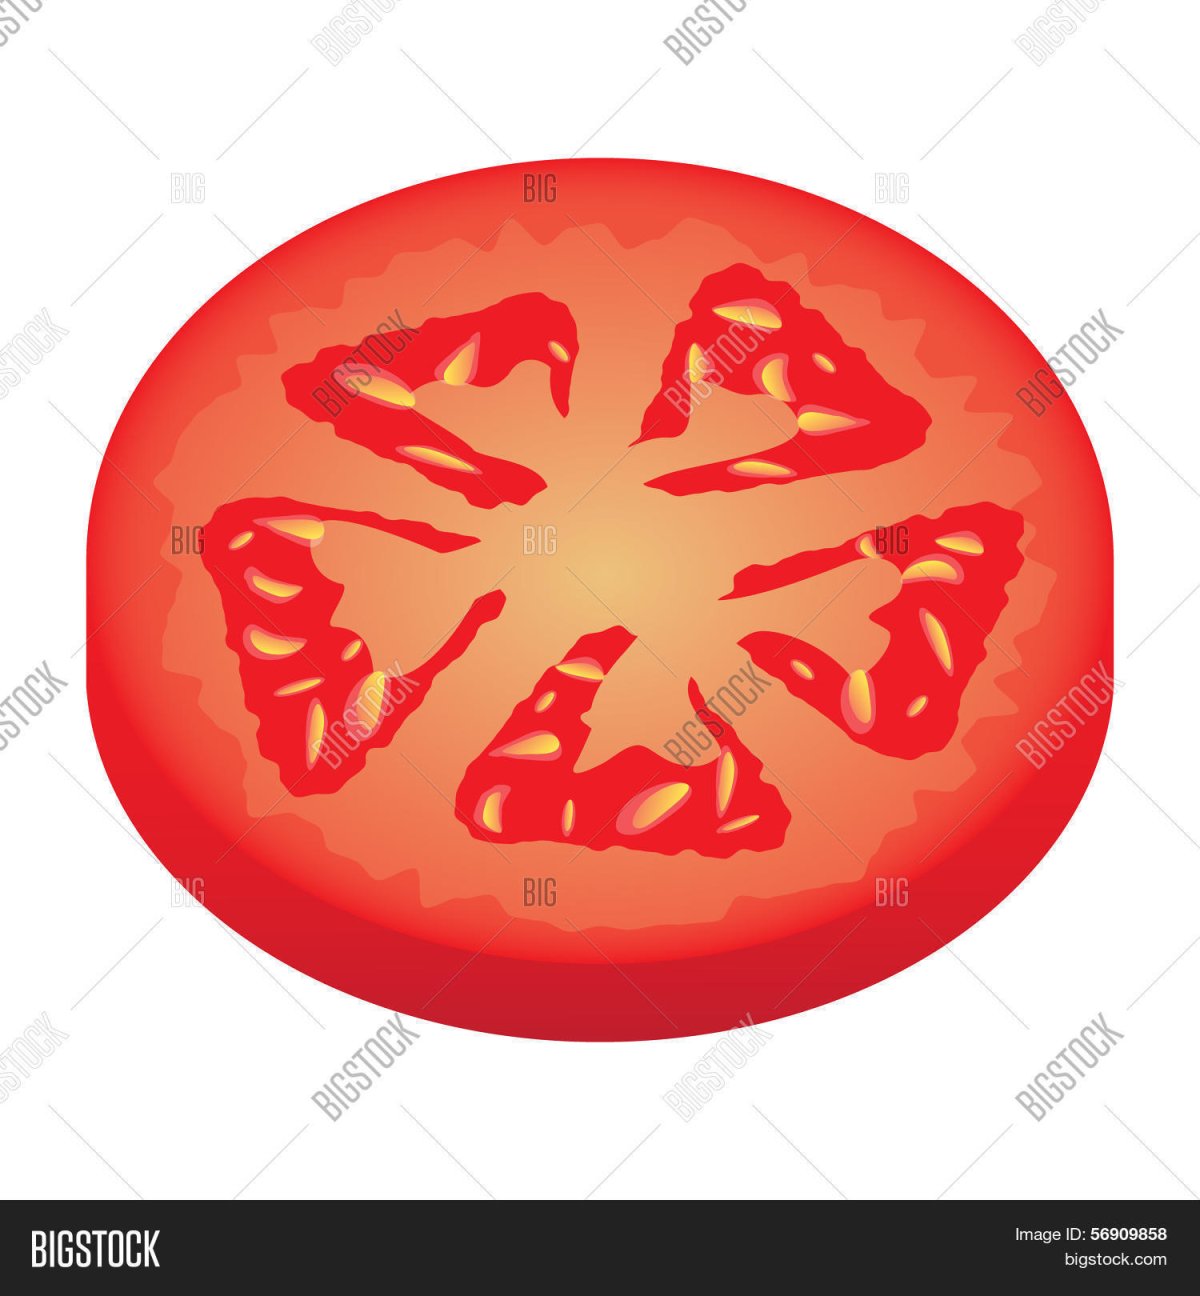 Картинка помидора